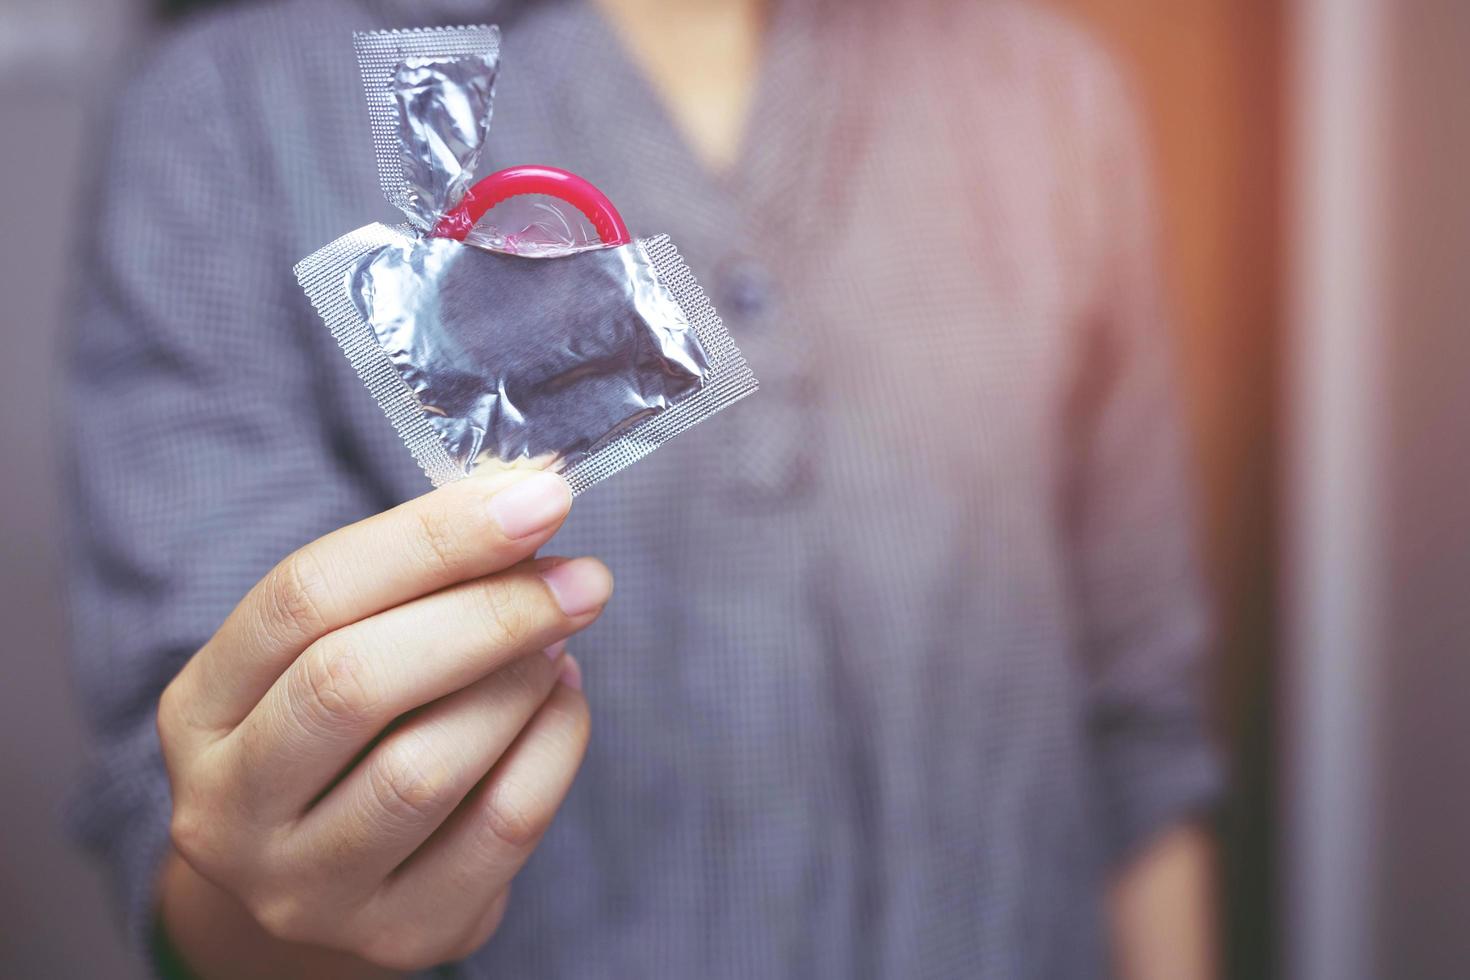 kondom gebrauchsfertig in weiblicher hand, geben kondom safer sex konzept auf dem bett verhindern infektionen und kontrazeptiva kontrollieren die geburtenrate oder sichere prophylaxe. Welt-AIDS-Tag foto